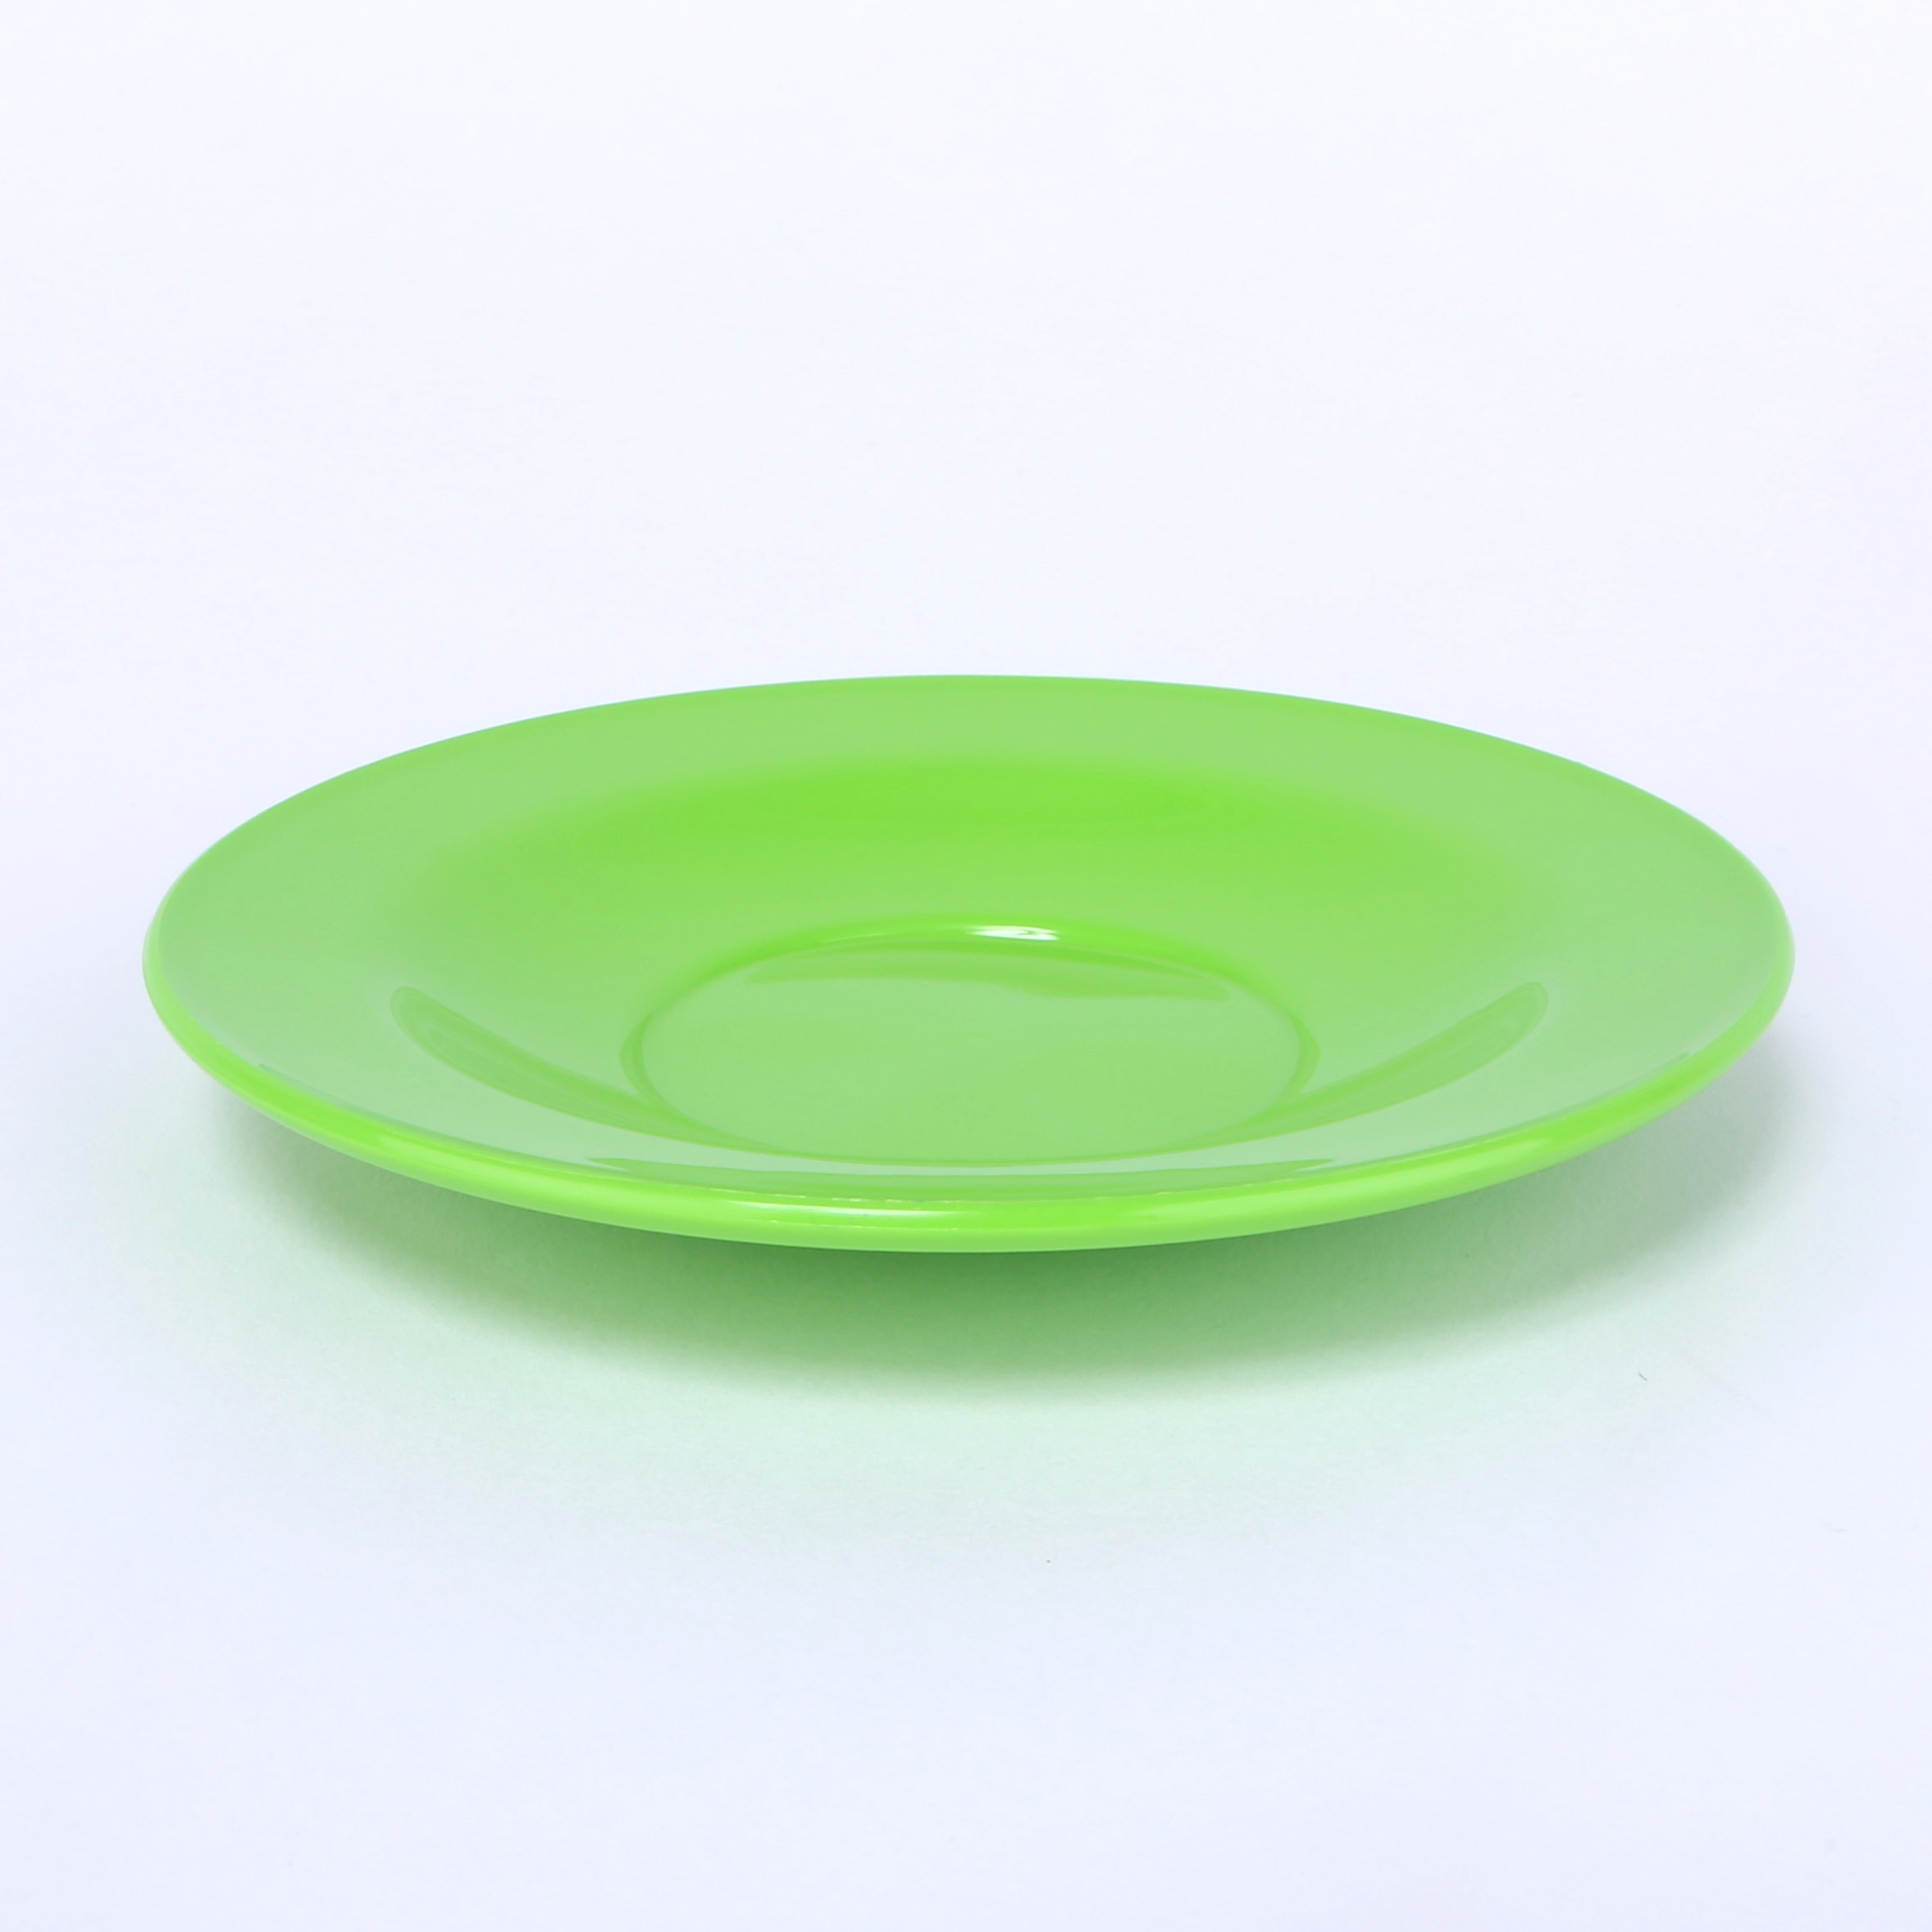 vaLon Zephyr Untertasse 13,5 cm aus schadstofffreiem Kunststoff in der Farbe grasgrün